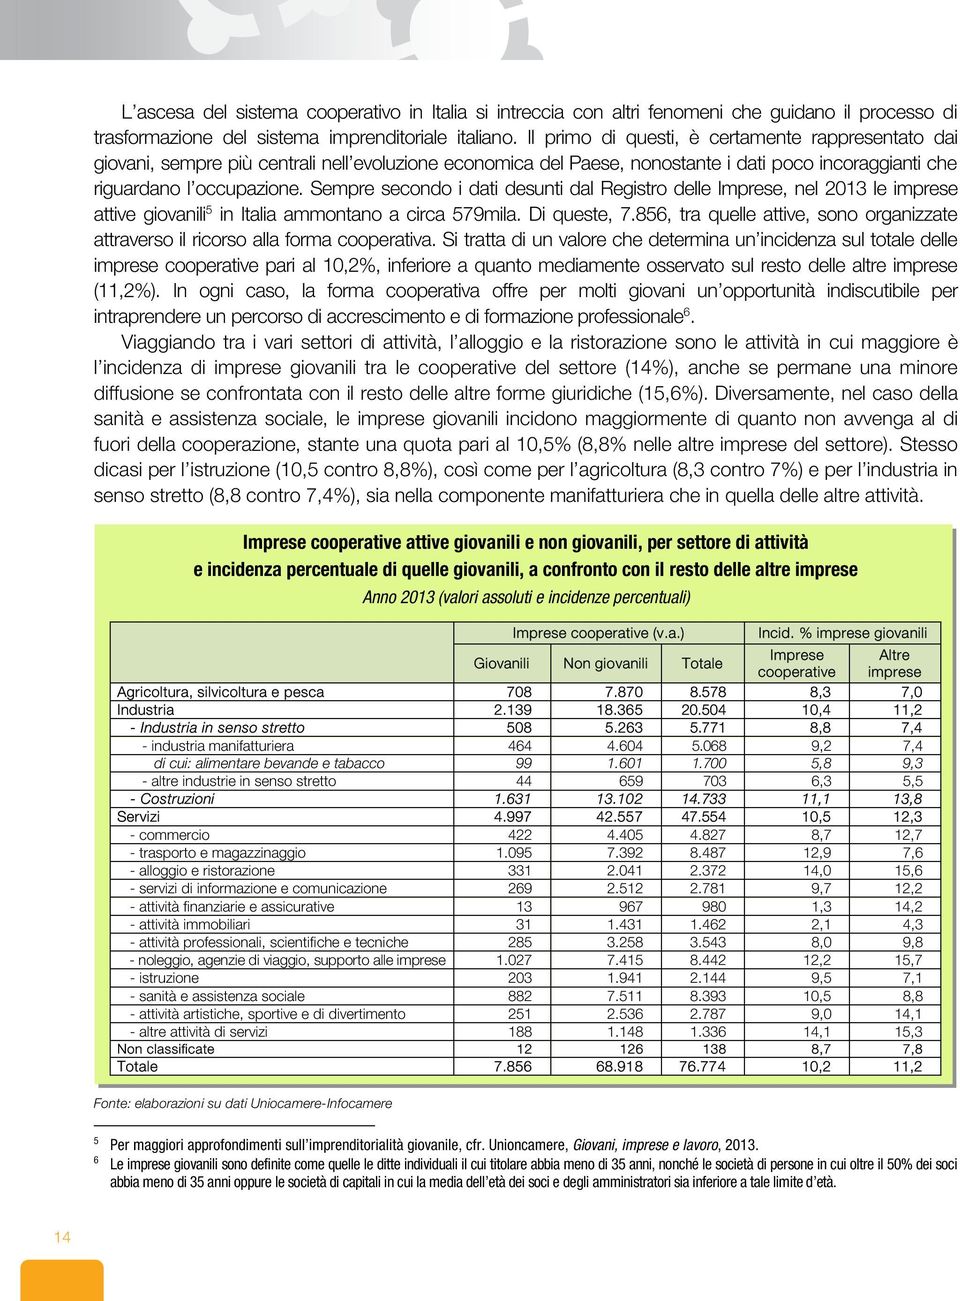 Sempre secondo i dati desunti dal Registro delle Imprese, nel 2013 le imprese attive giovanili 5 in Italia ammontano a circa 579mila. Di queste, 7.